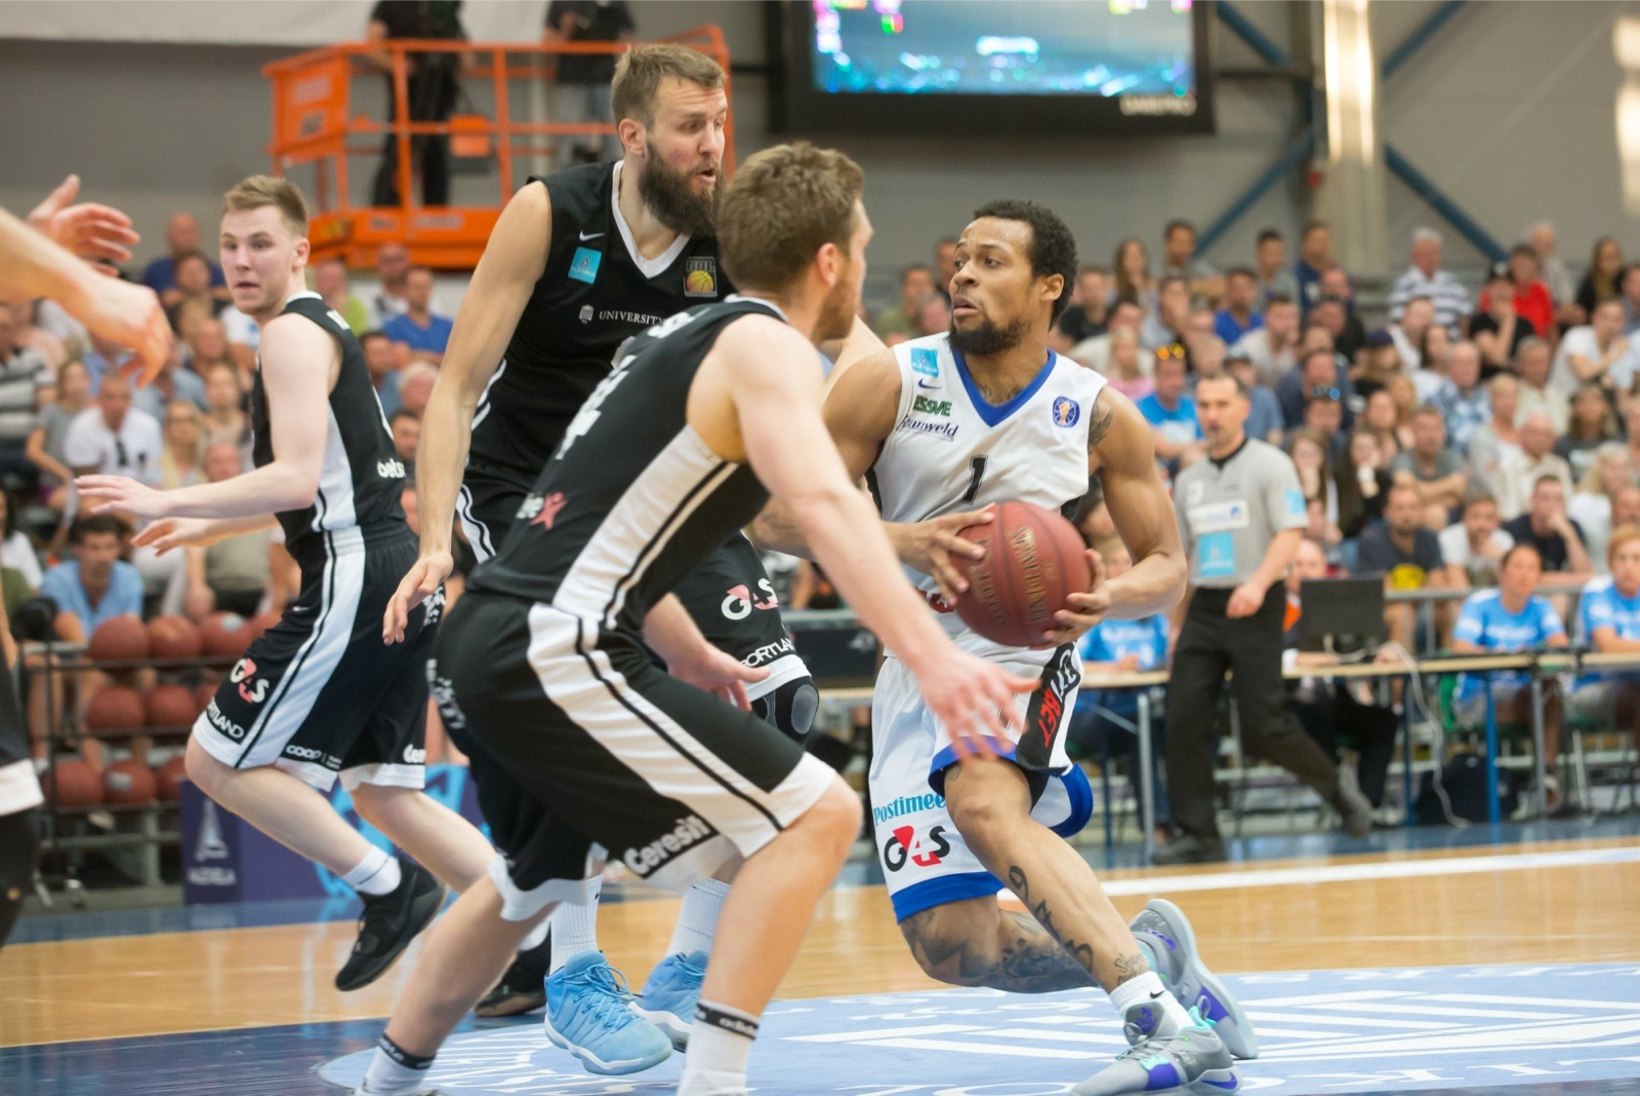 NII SEE JUHTUS | Sport 24.05: Kalev/Cramo tuli Eesti meistriks, ootamatu uudis rallimaailmast